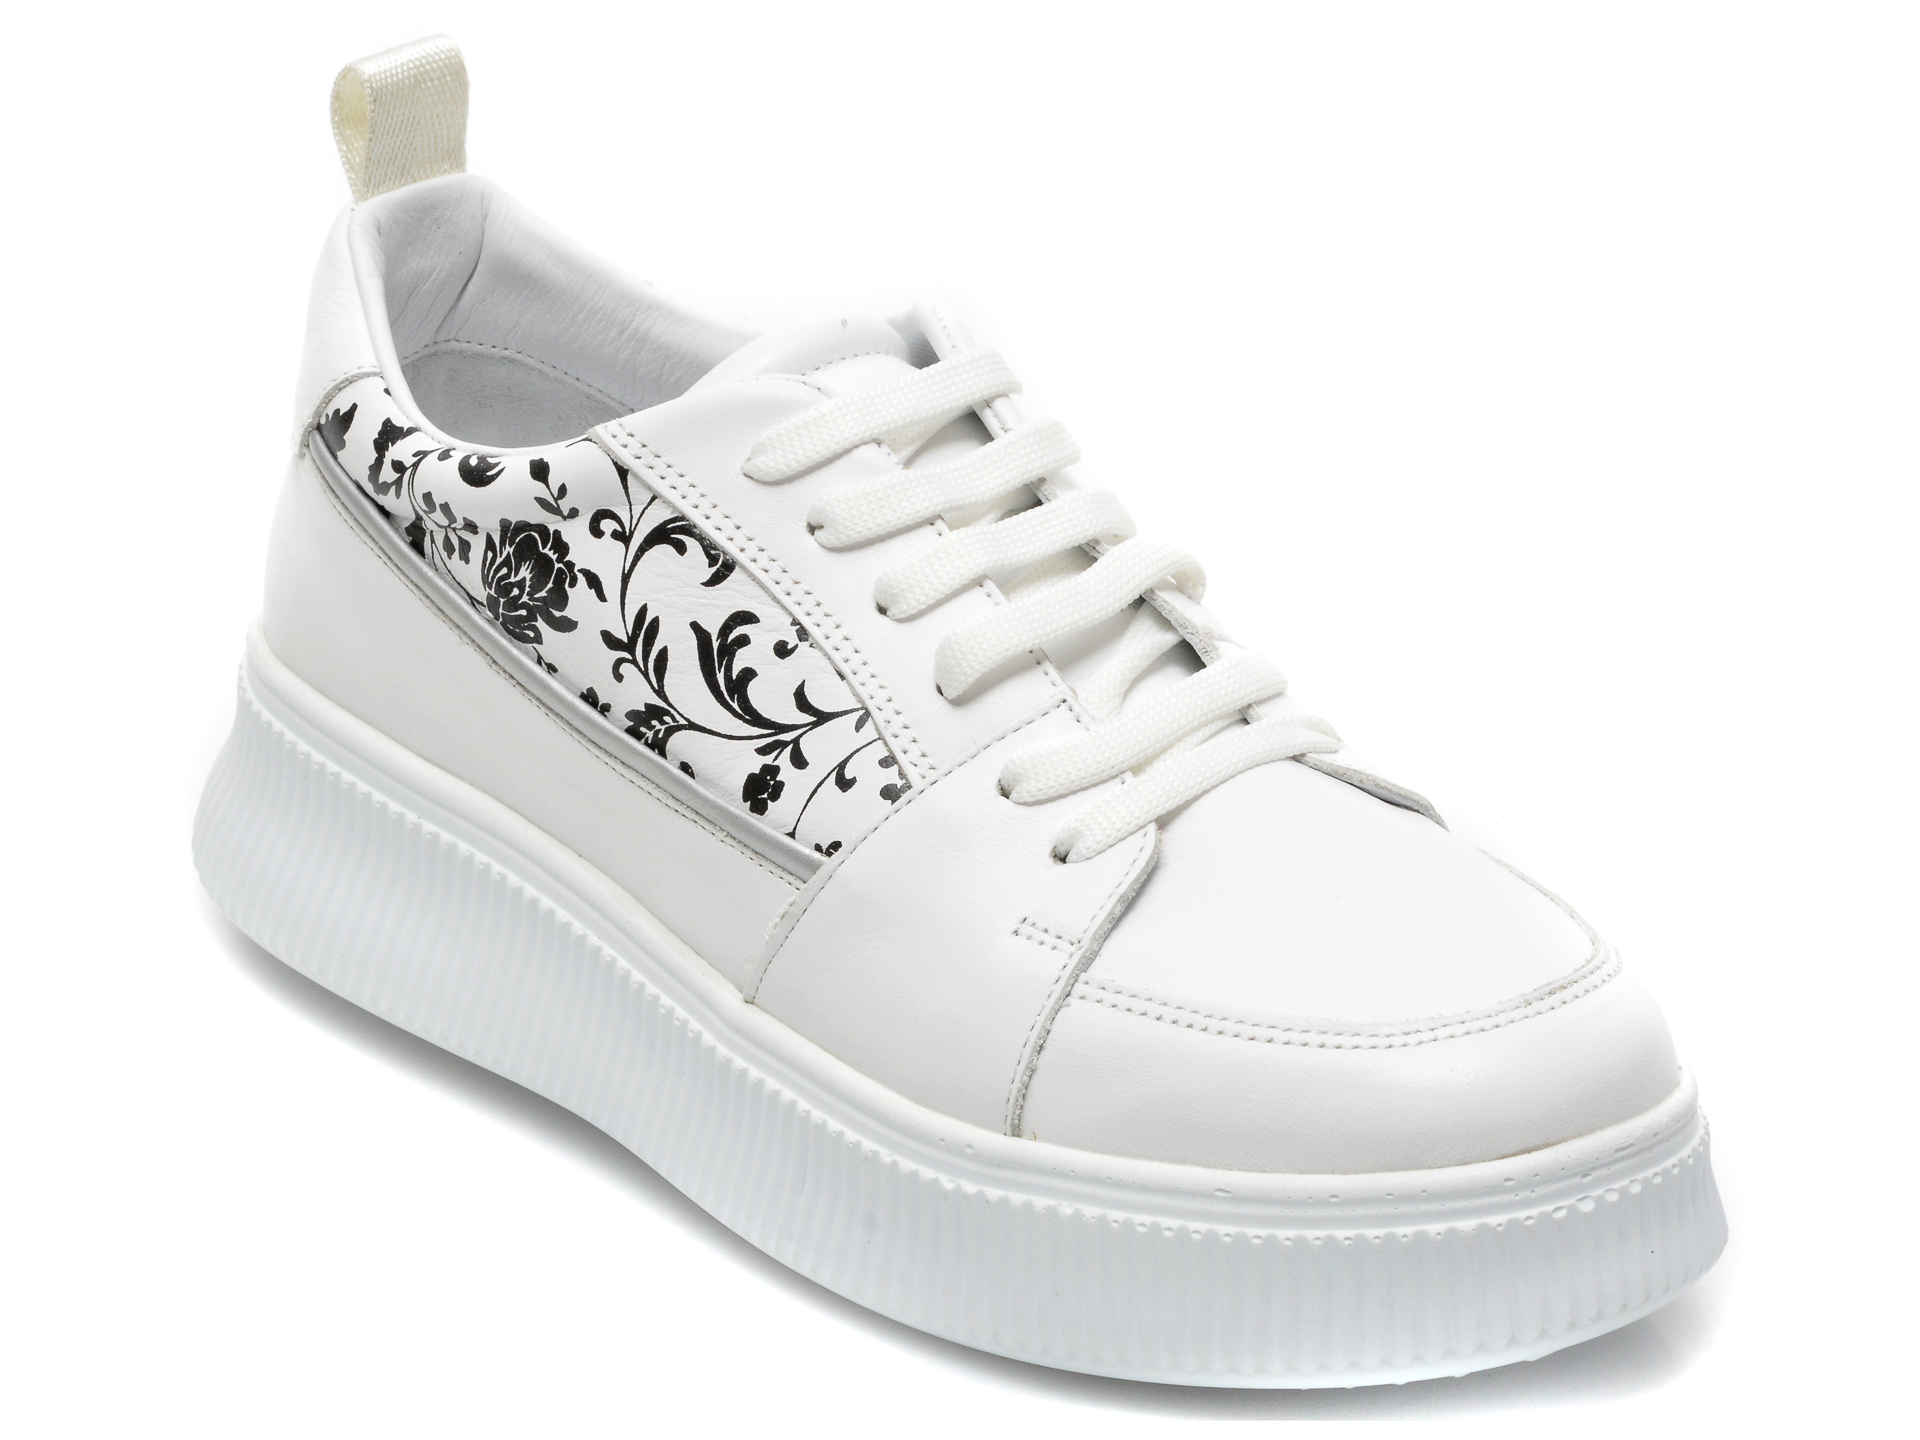 Pantofi sport ILVI albi, 133, din piele naturala /femei/pantofi